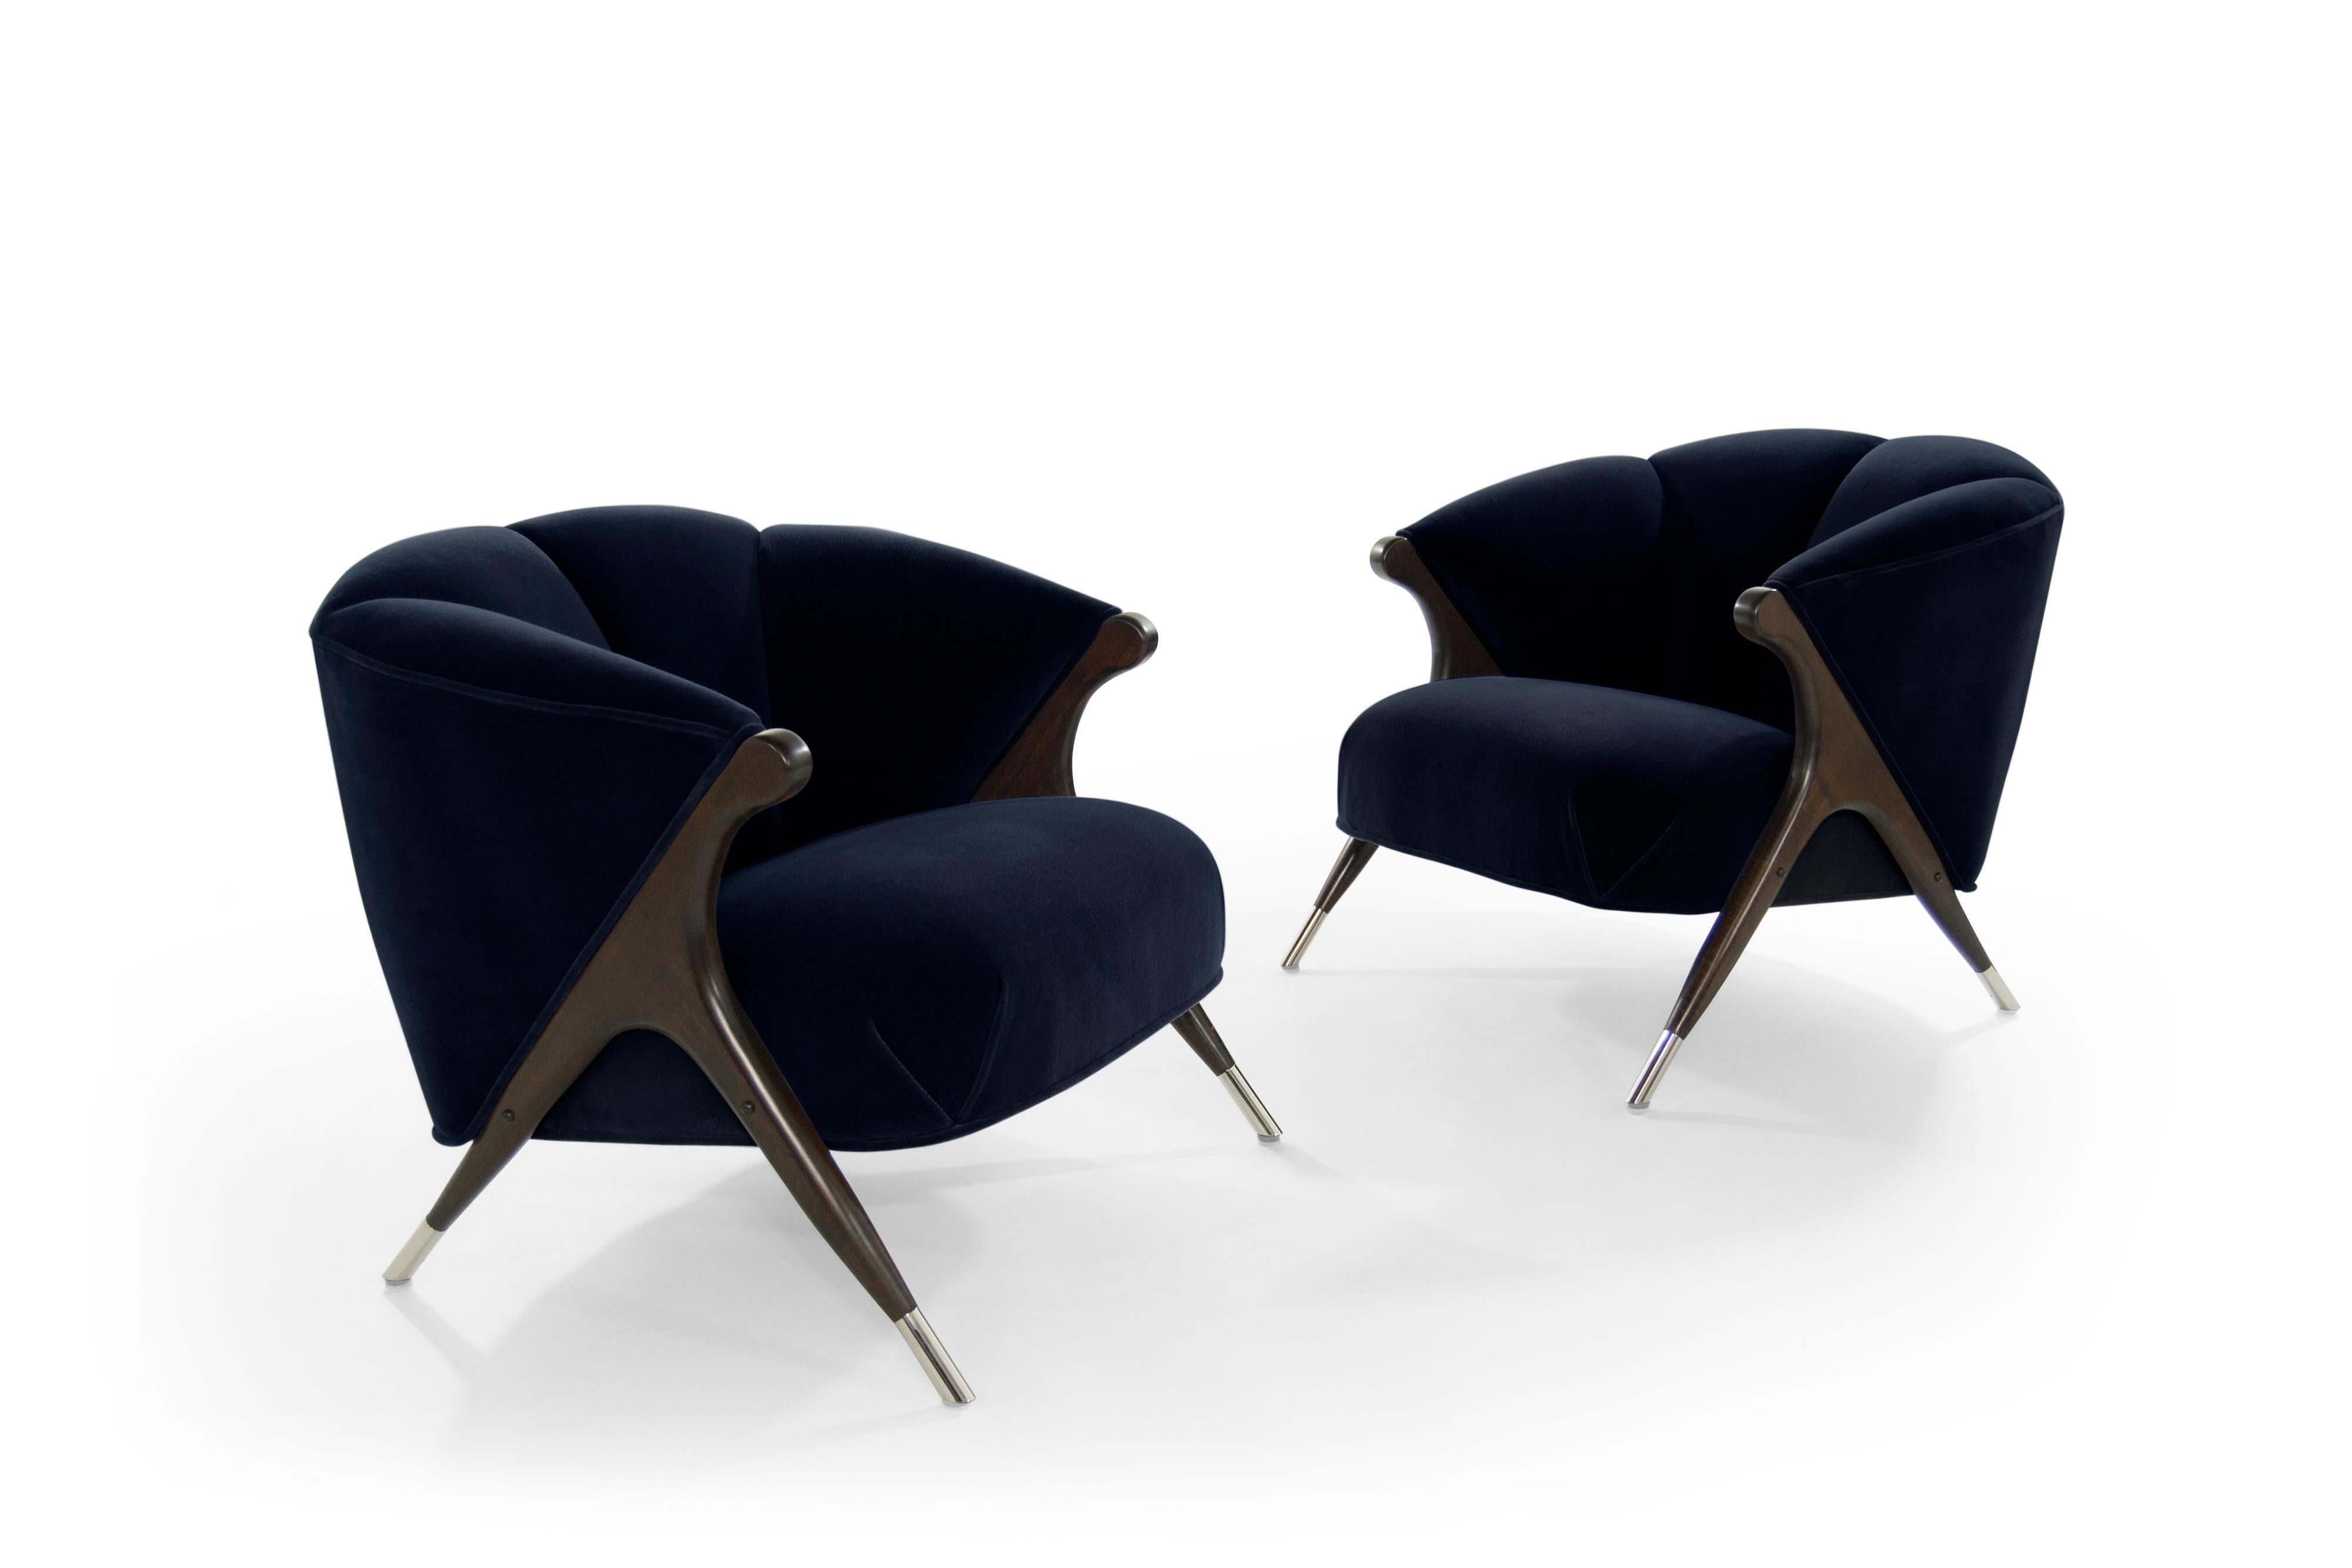 20th Century Modernist Karpen Lounge Chairs in Navy Velvet, 1950s